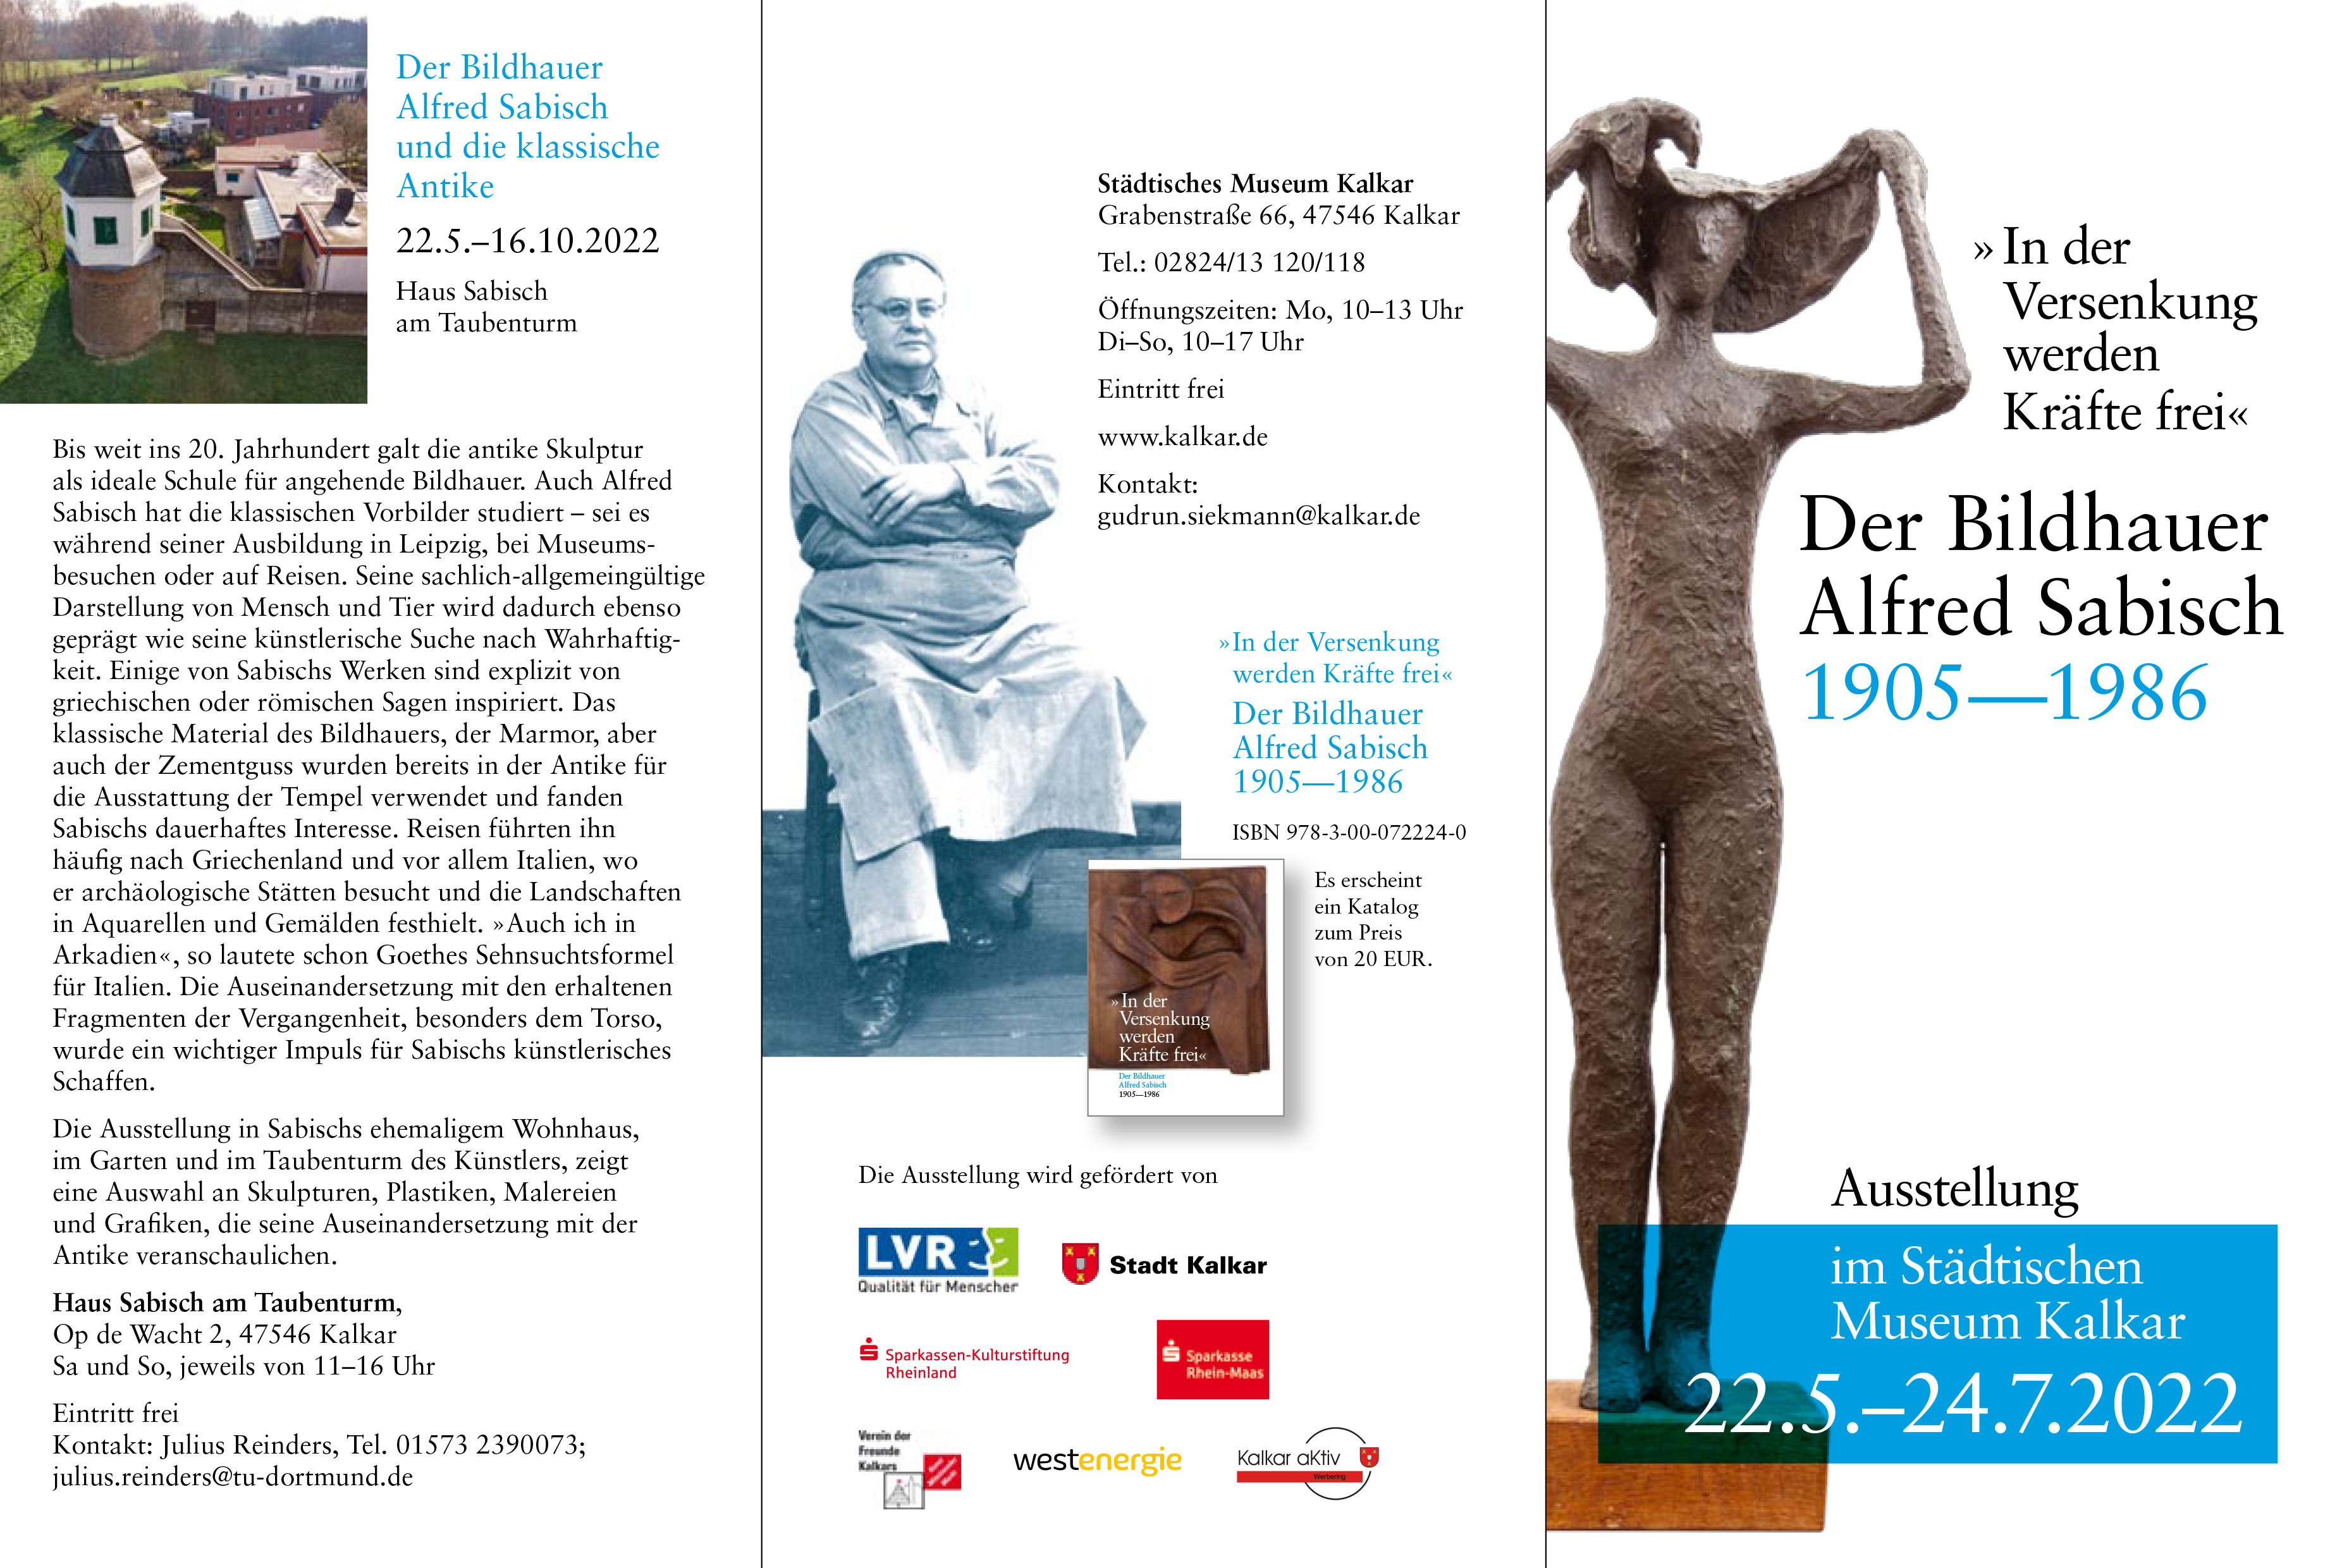 Programm der Sabisch-Ausstellung im Städtischen Museum Kalkar 2022